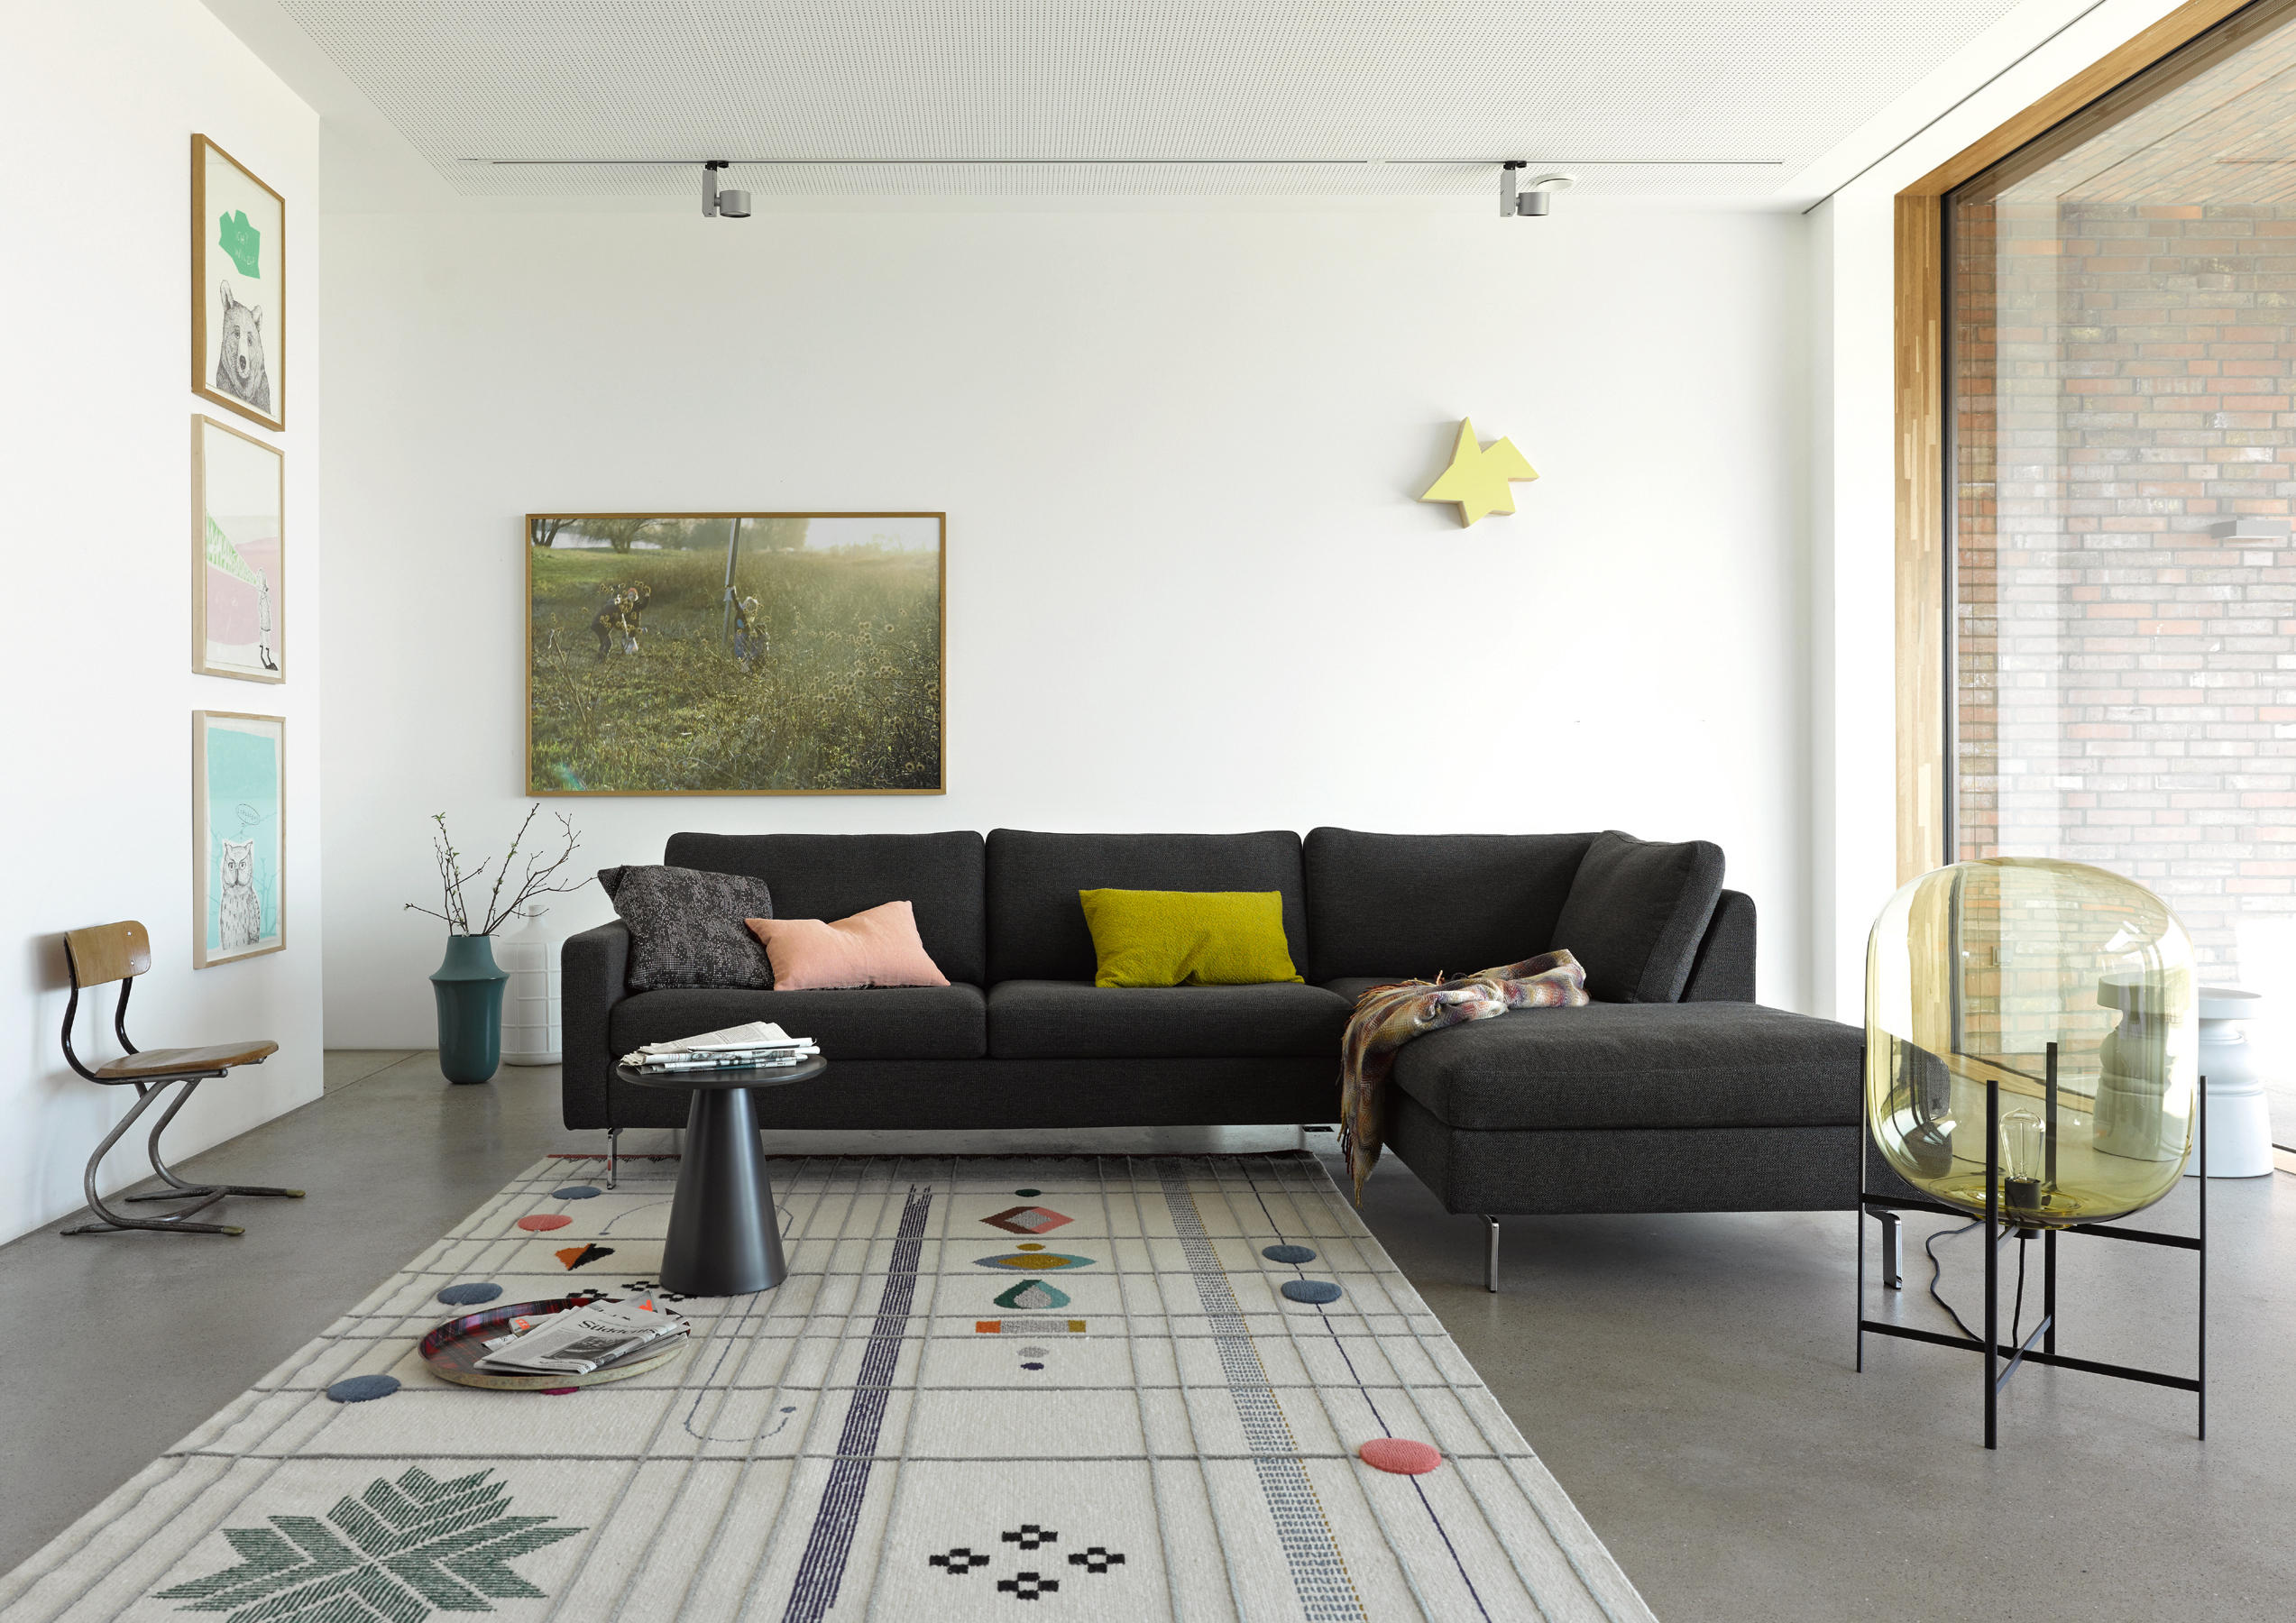 Conseta Sofa Bed & designer furniture | Architonic